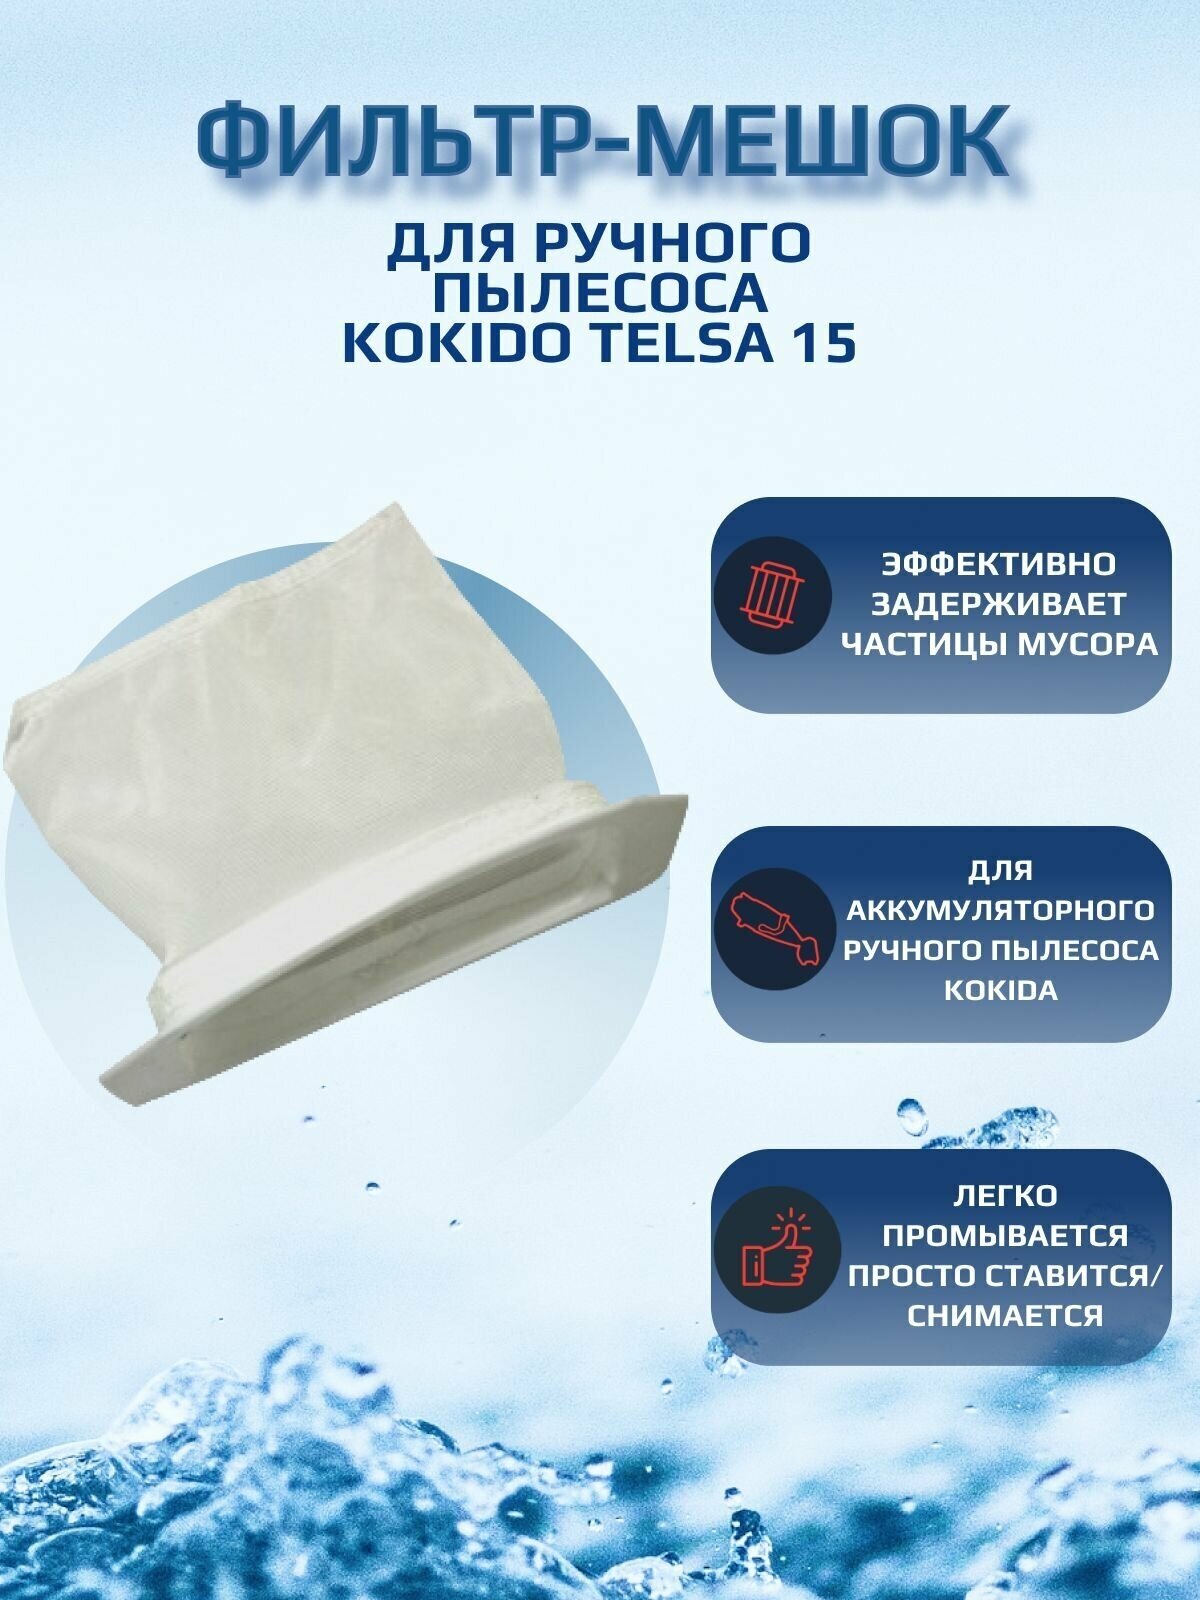 Фильтр-мешок для пылесоса для бассейна Kokido Telsa 15